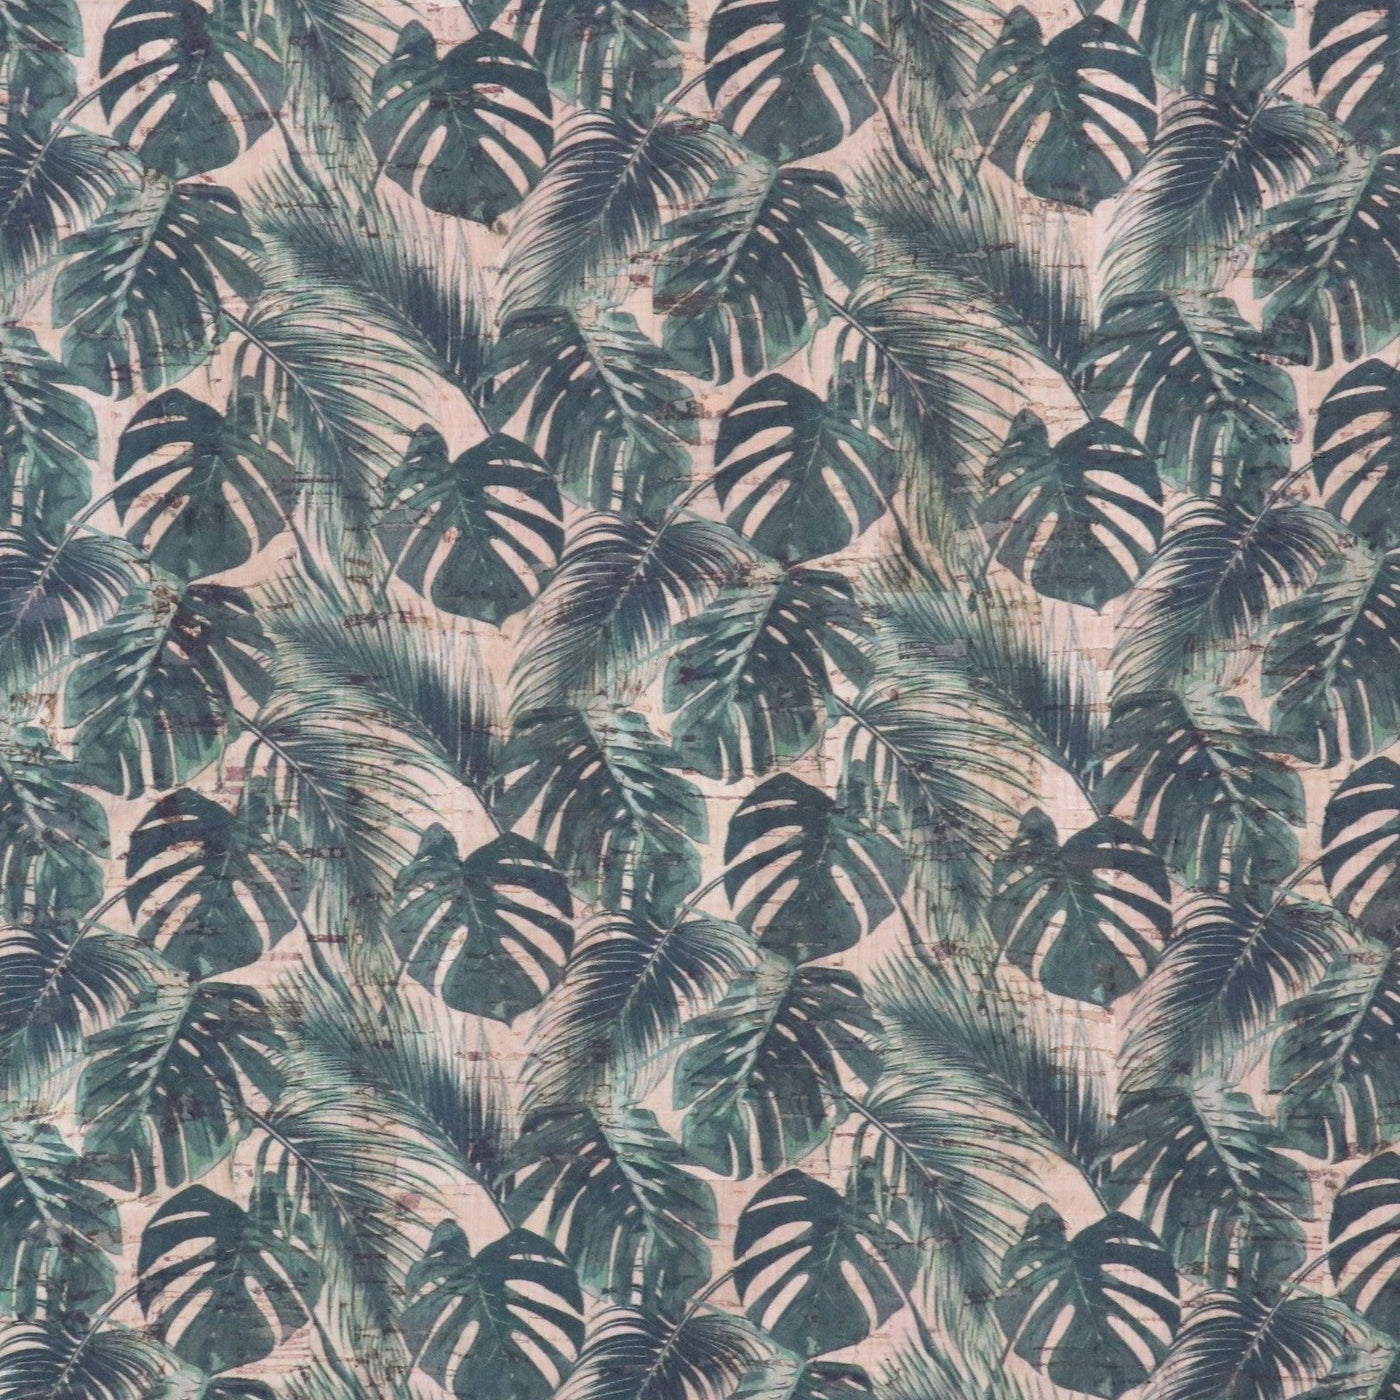 Corte empaquetado de 1/2 yarda: tela de corcho con hojas de palma